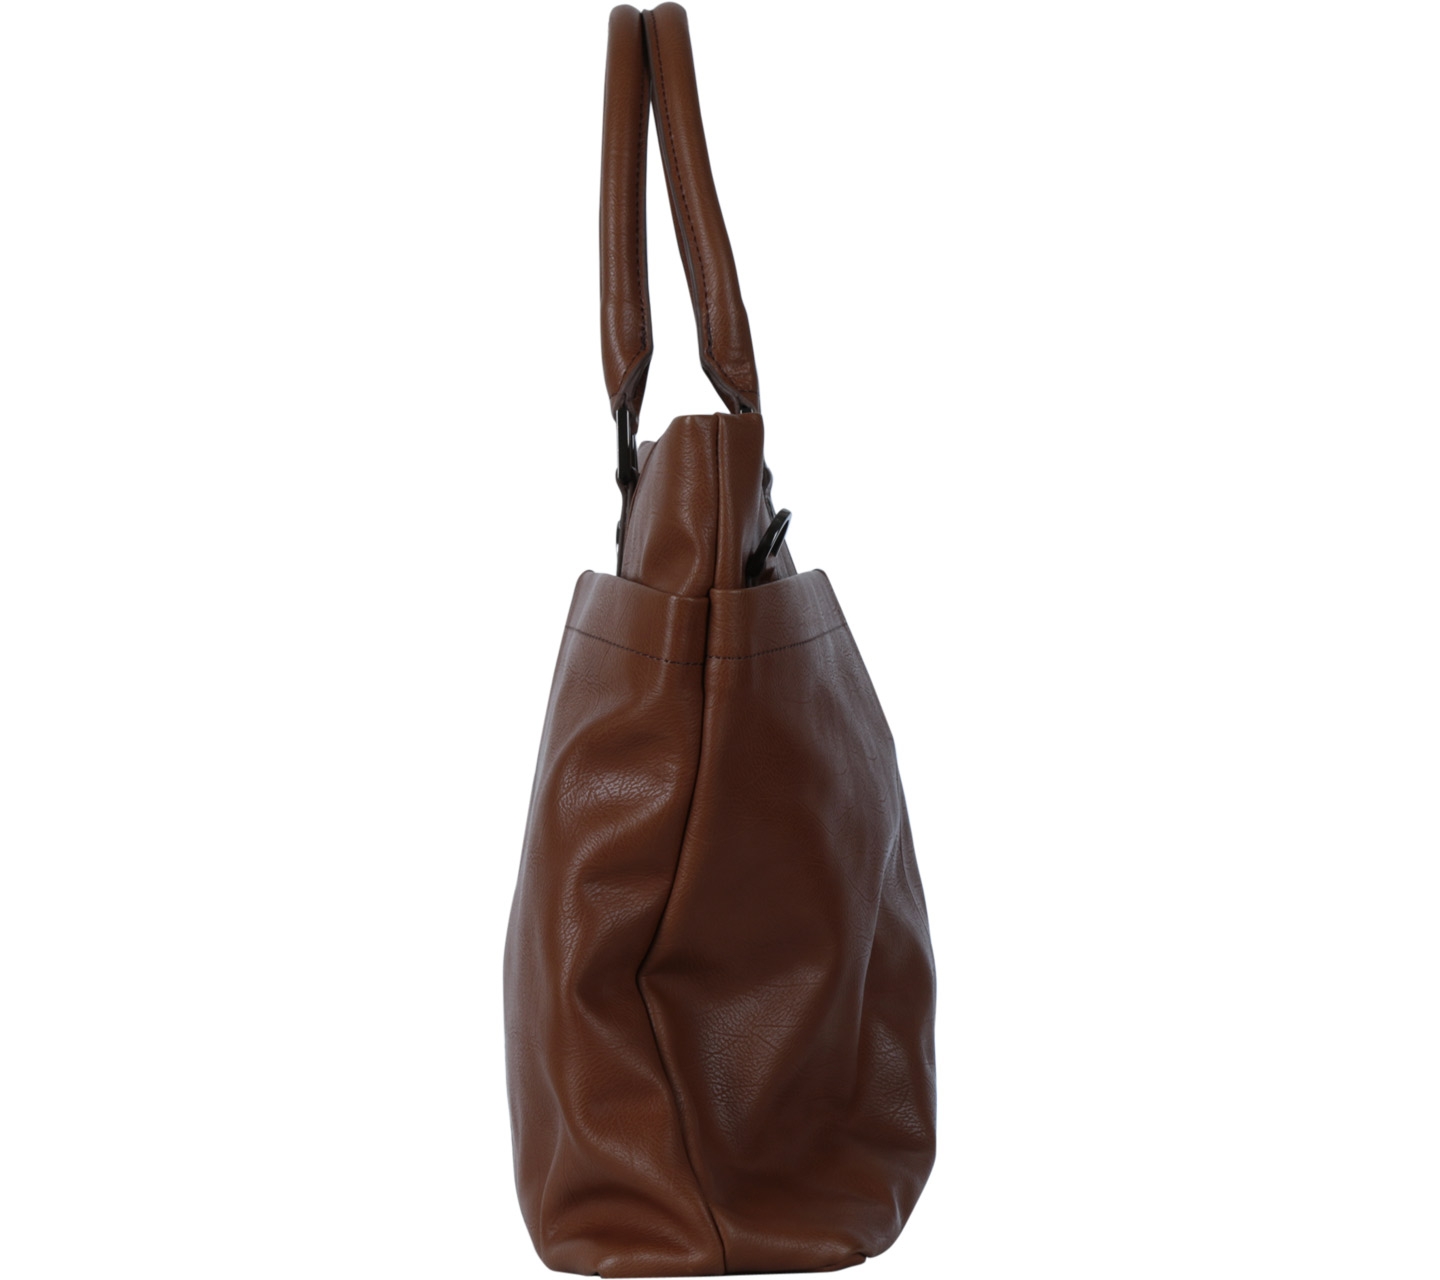 Samsonite Brown Tote Bag